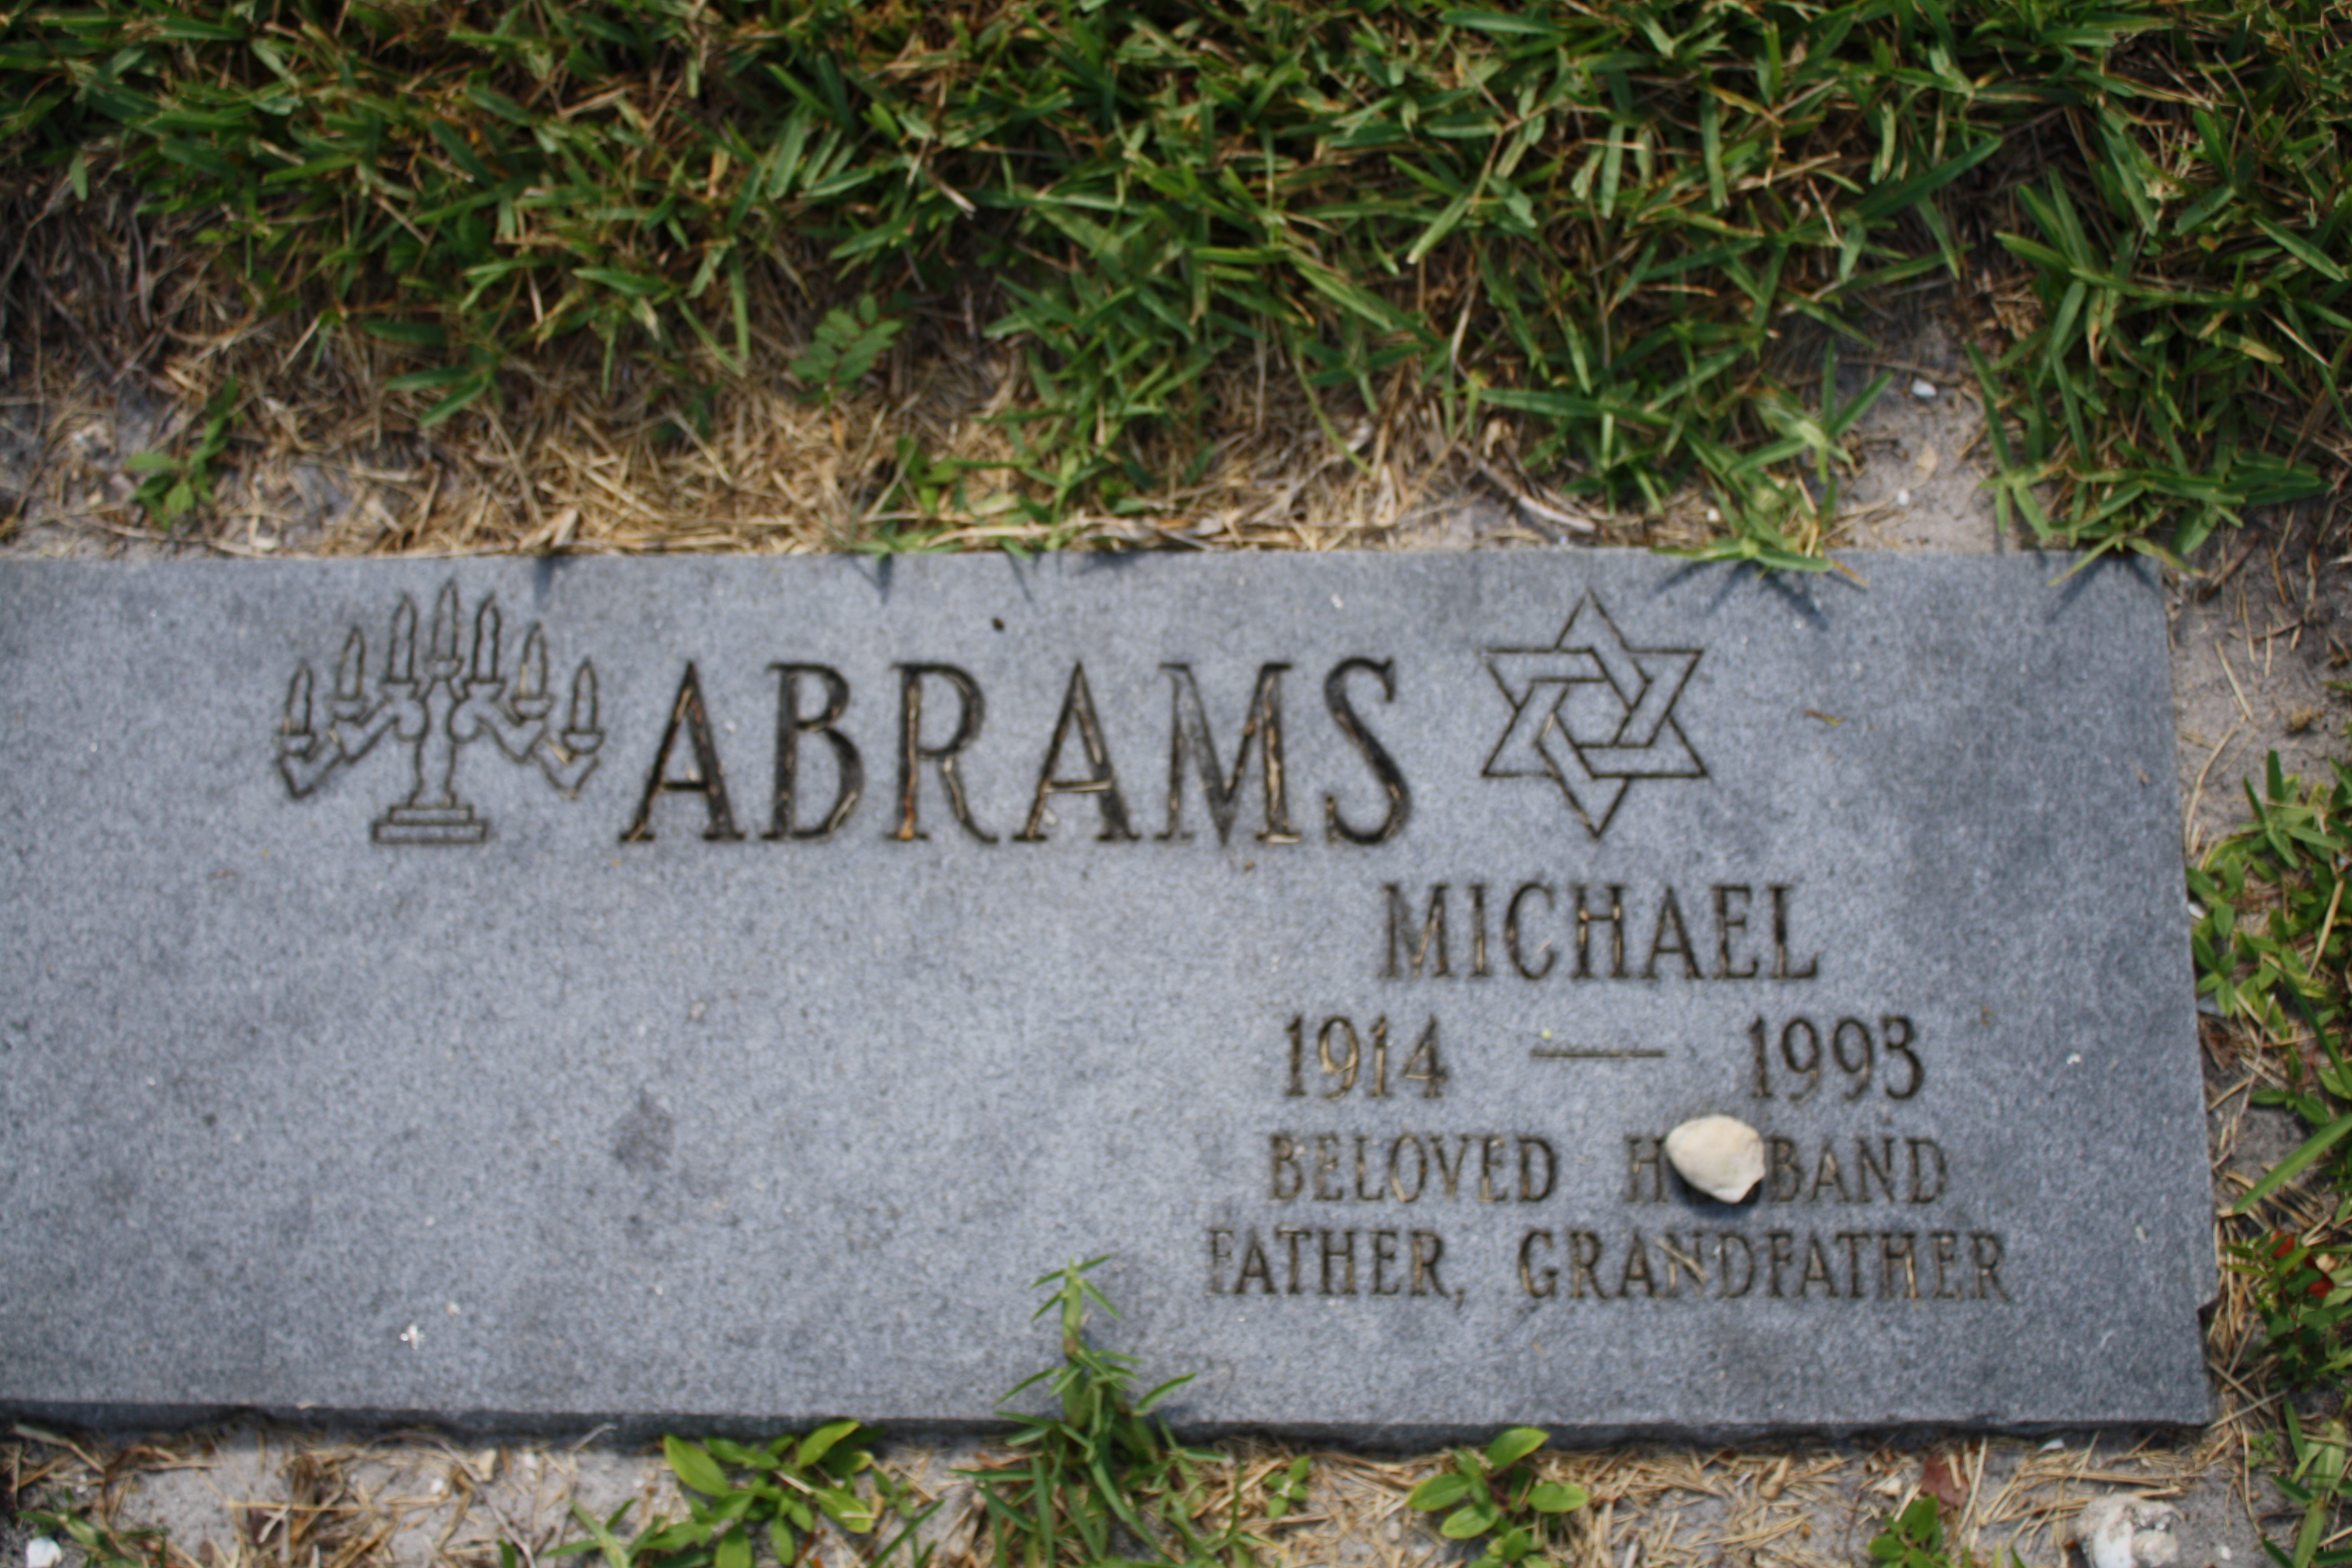 Michael Abrams